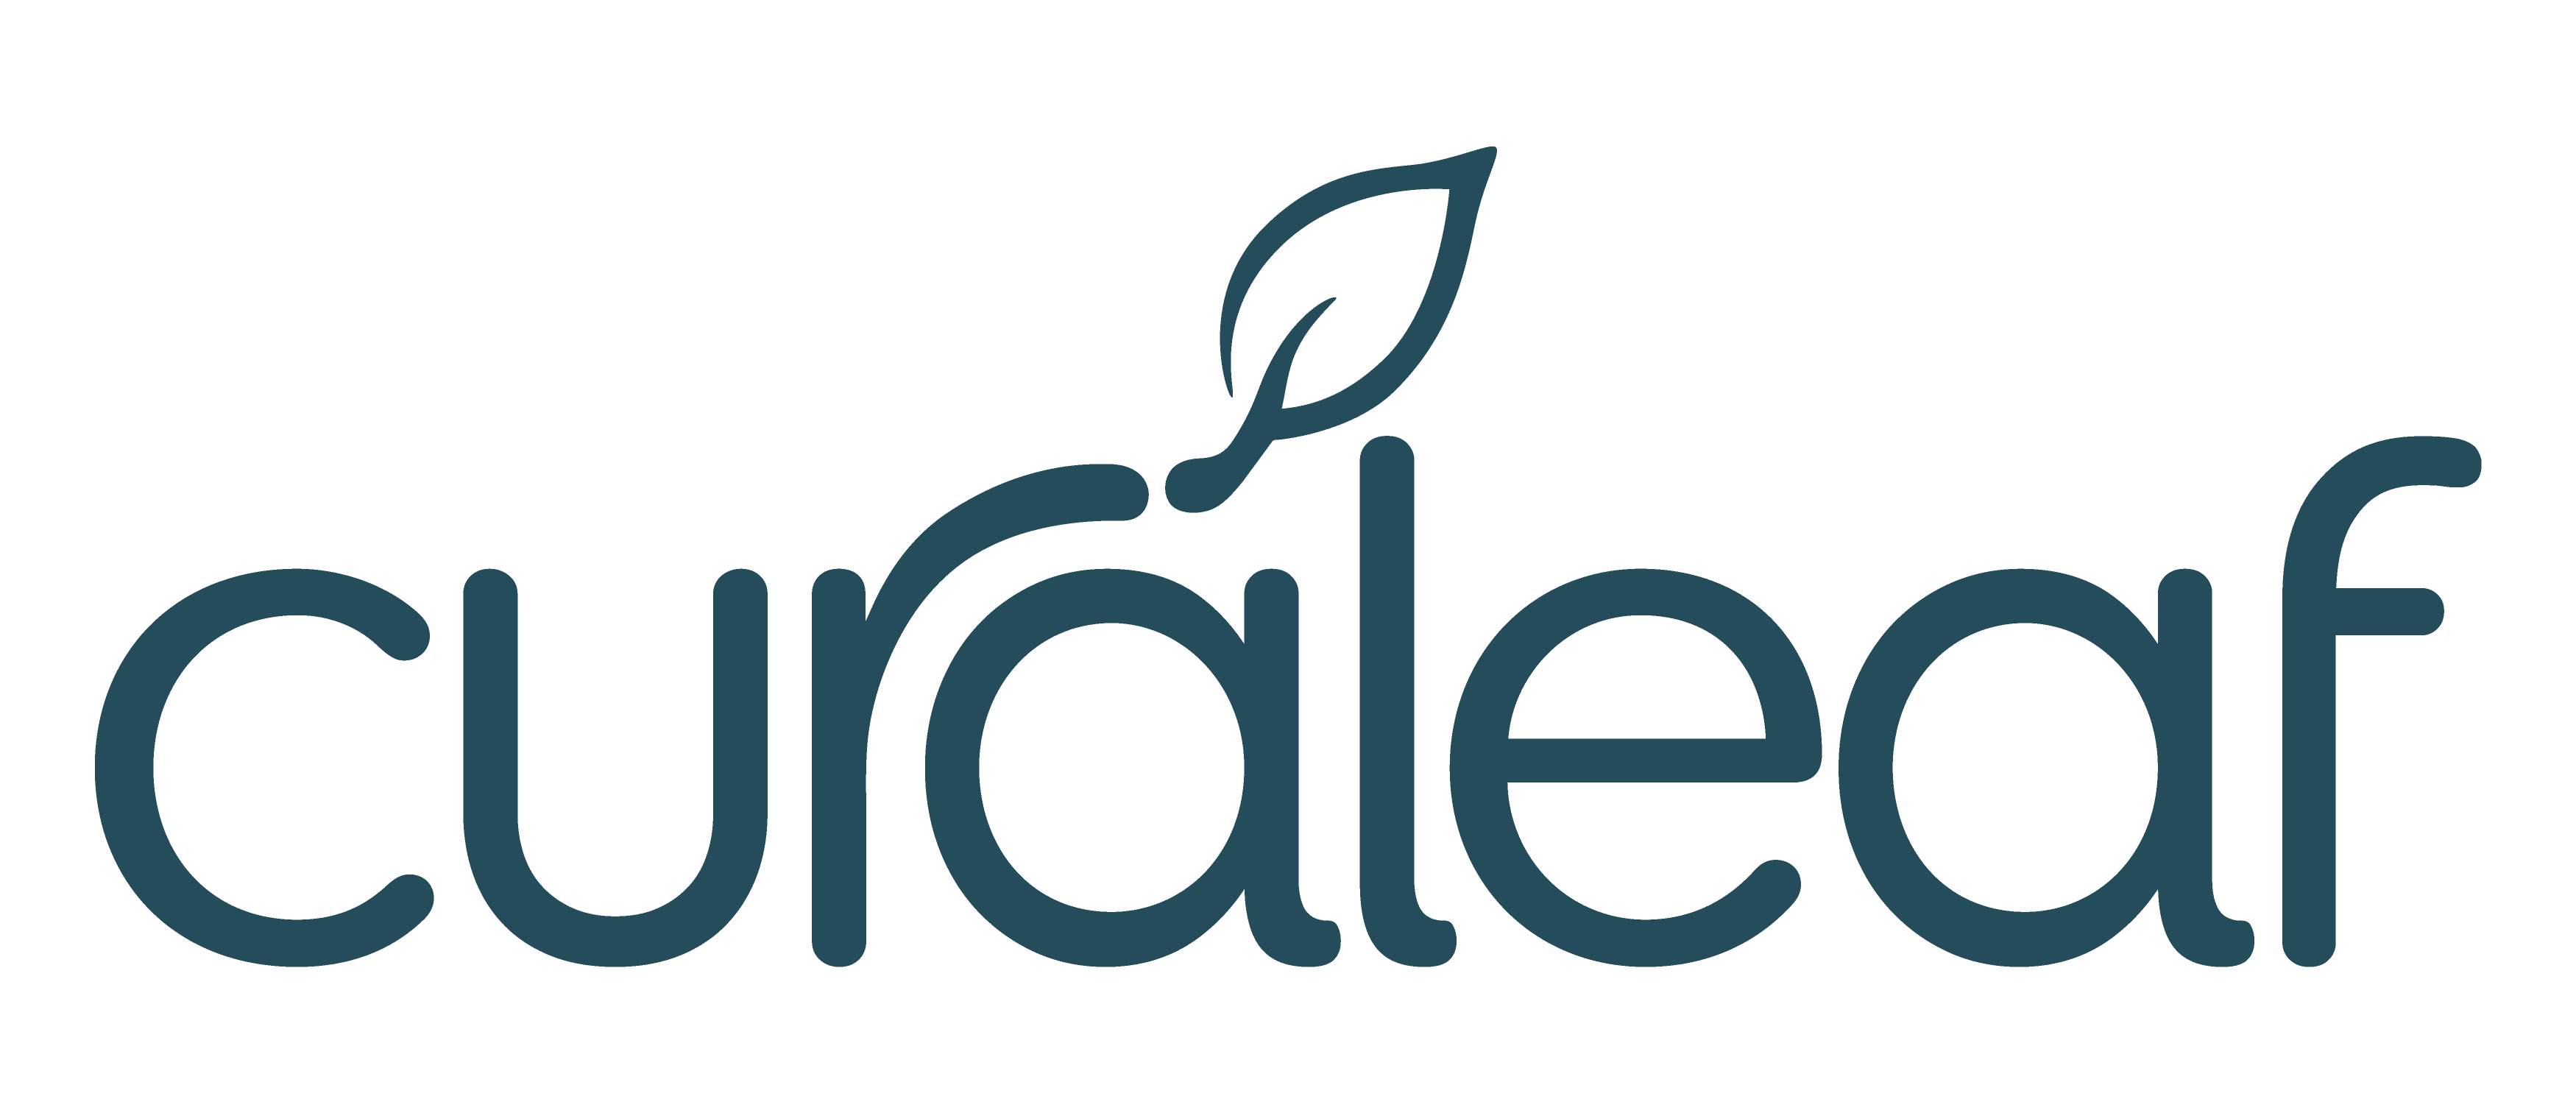 Curaleaf_Logo_Full_Blue.png